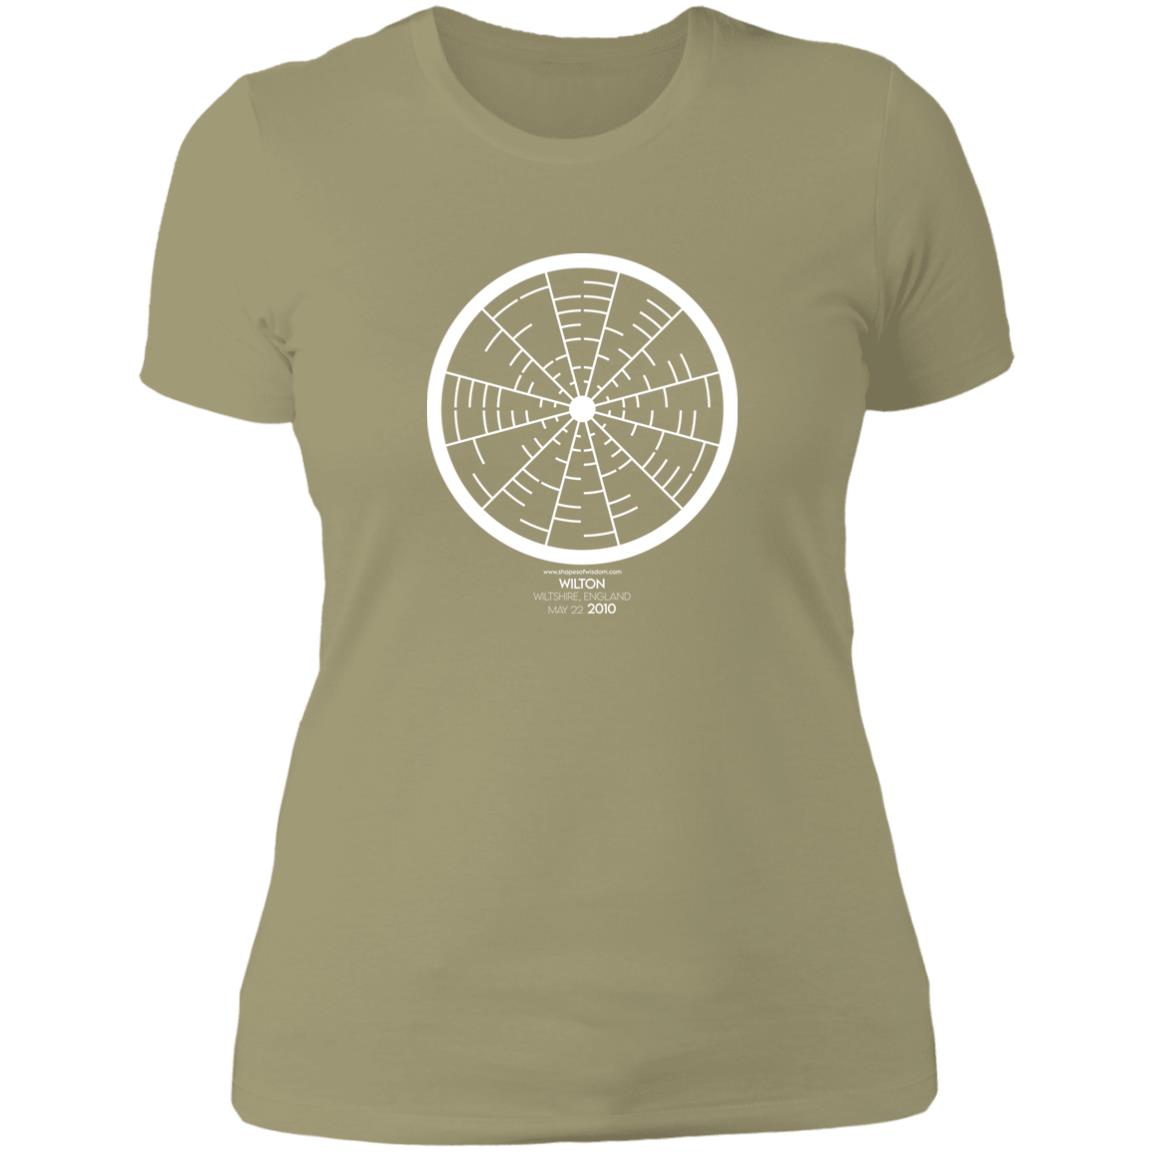 Crop Circle Basic T-Shirt - Wilton 2